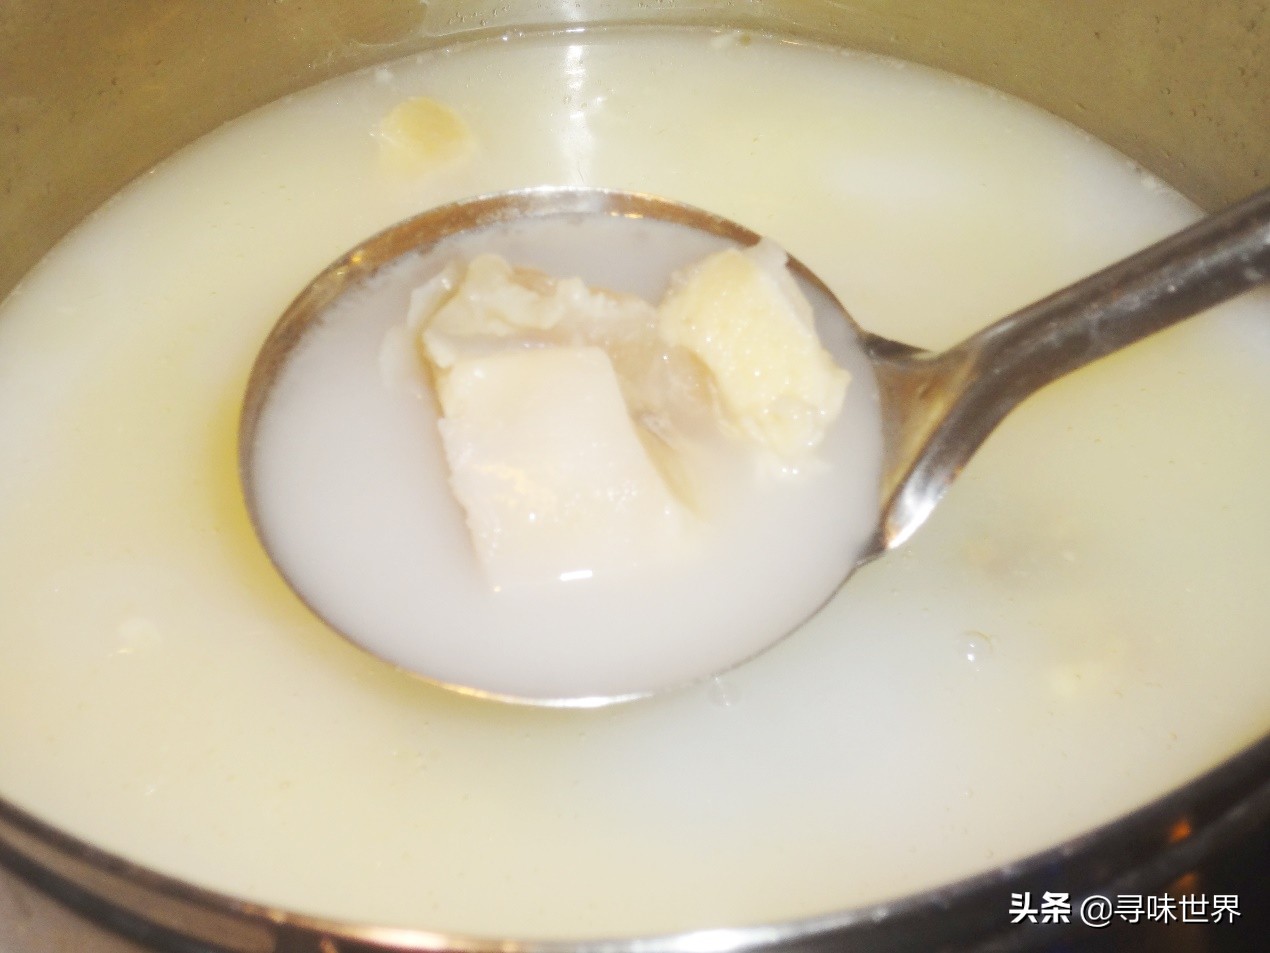 这才是熬牛骨汤正确做法，在家纯天然熬制，汤色奶白鲜美无比